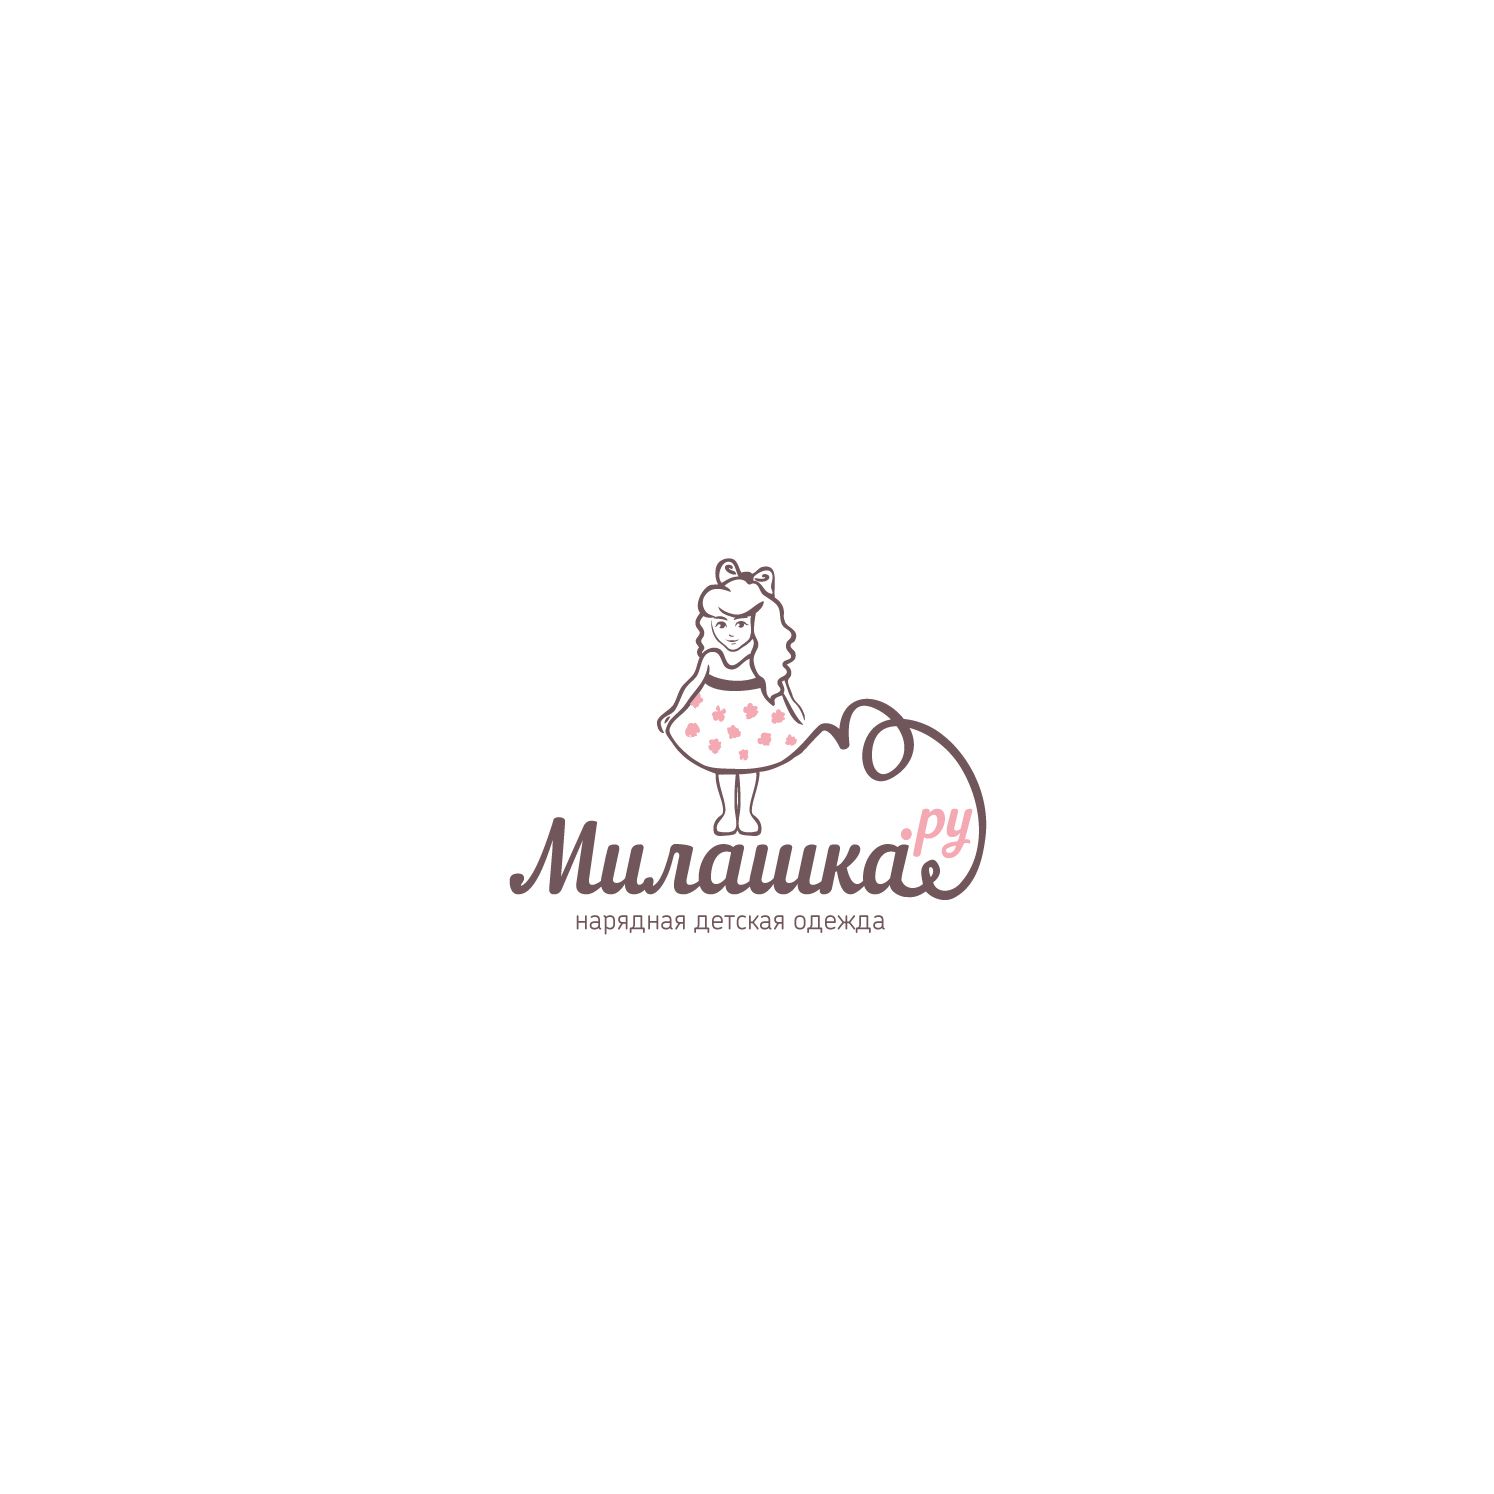 Логотип и стиль интернет-магазина Милашка.ру - дизайнер Allepta